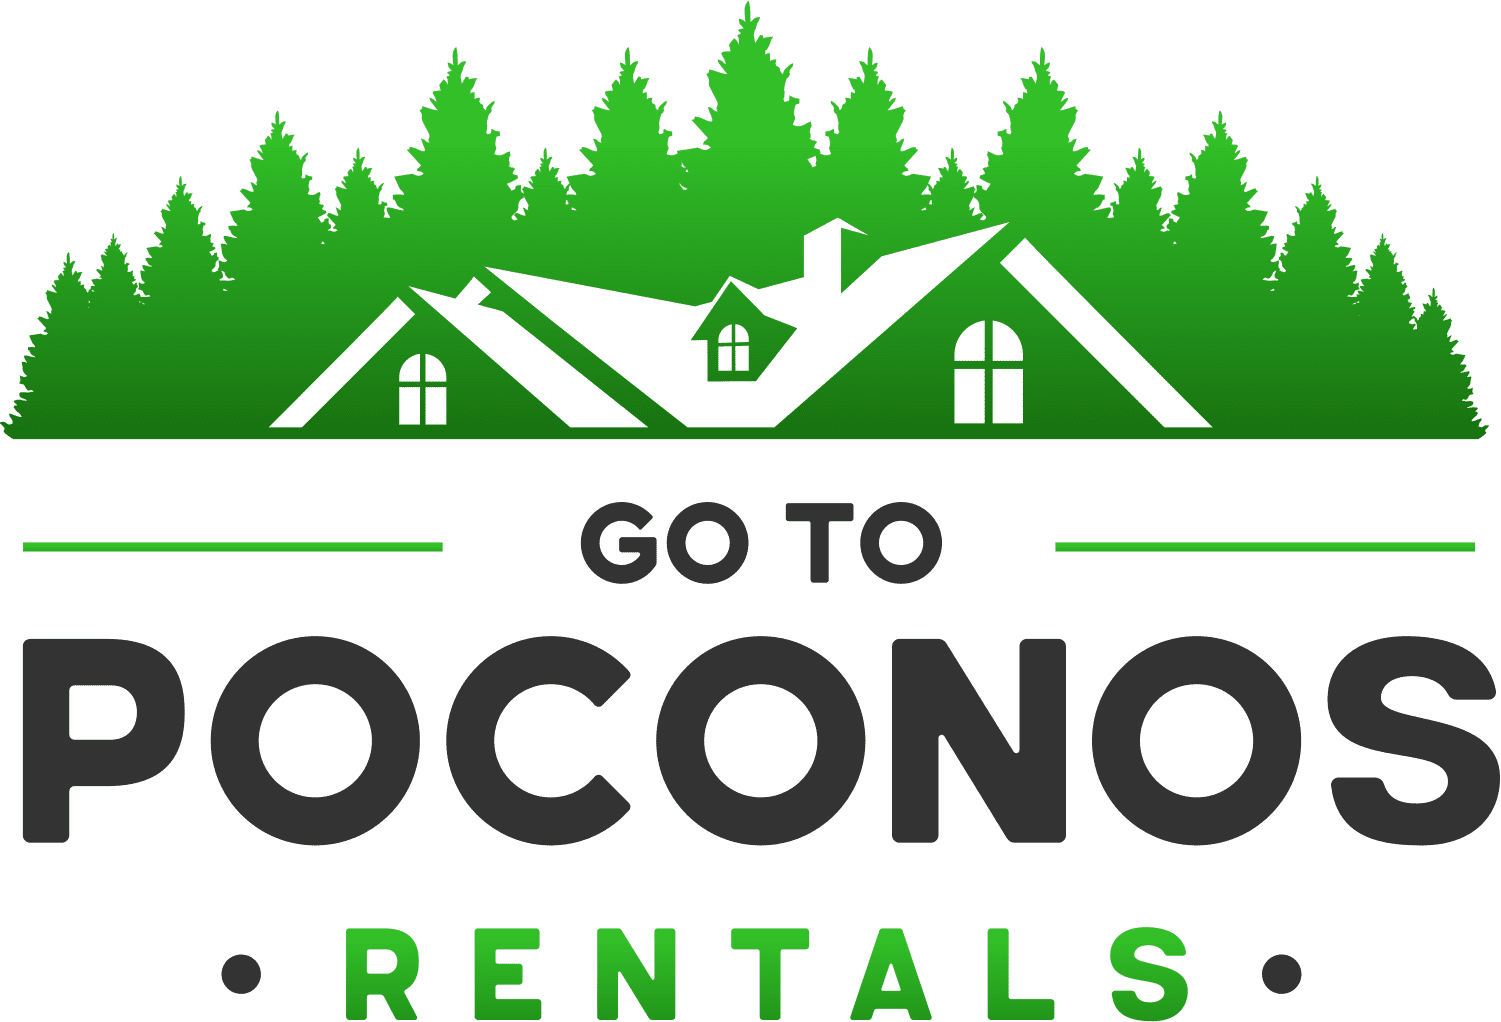 go-to-poconons-rentals-logo